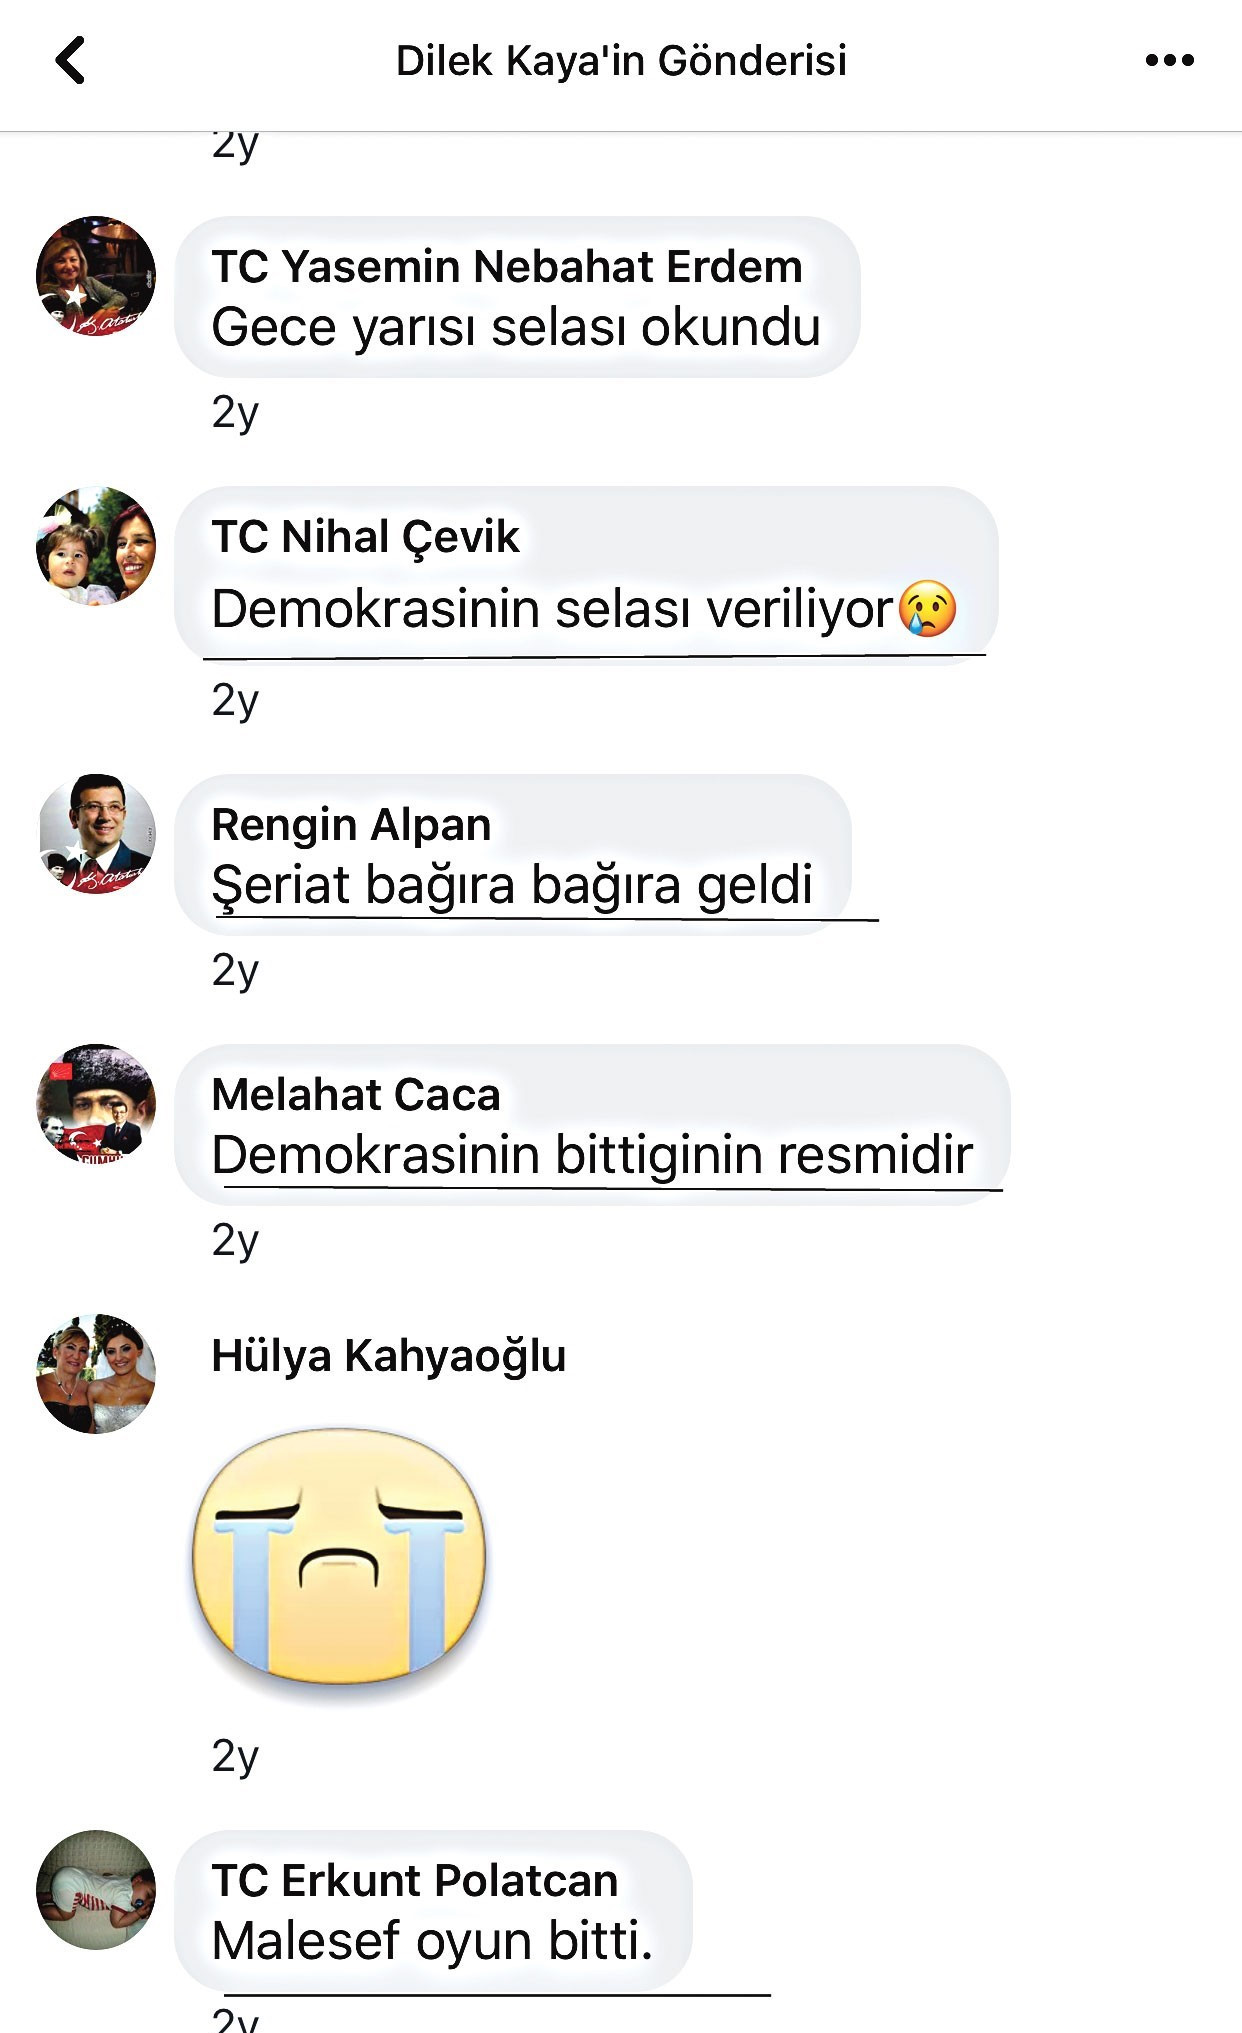 Dilek İmamoğlu'nun 15 Temmuz darbe girişiminden sonra yaptığı paylaşımlara destek verenler.